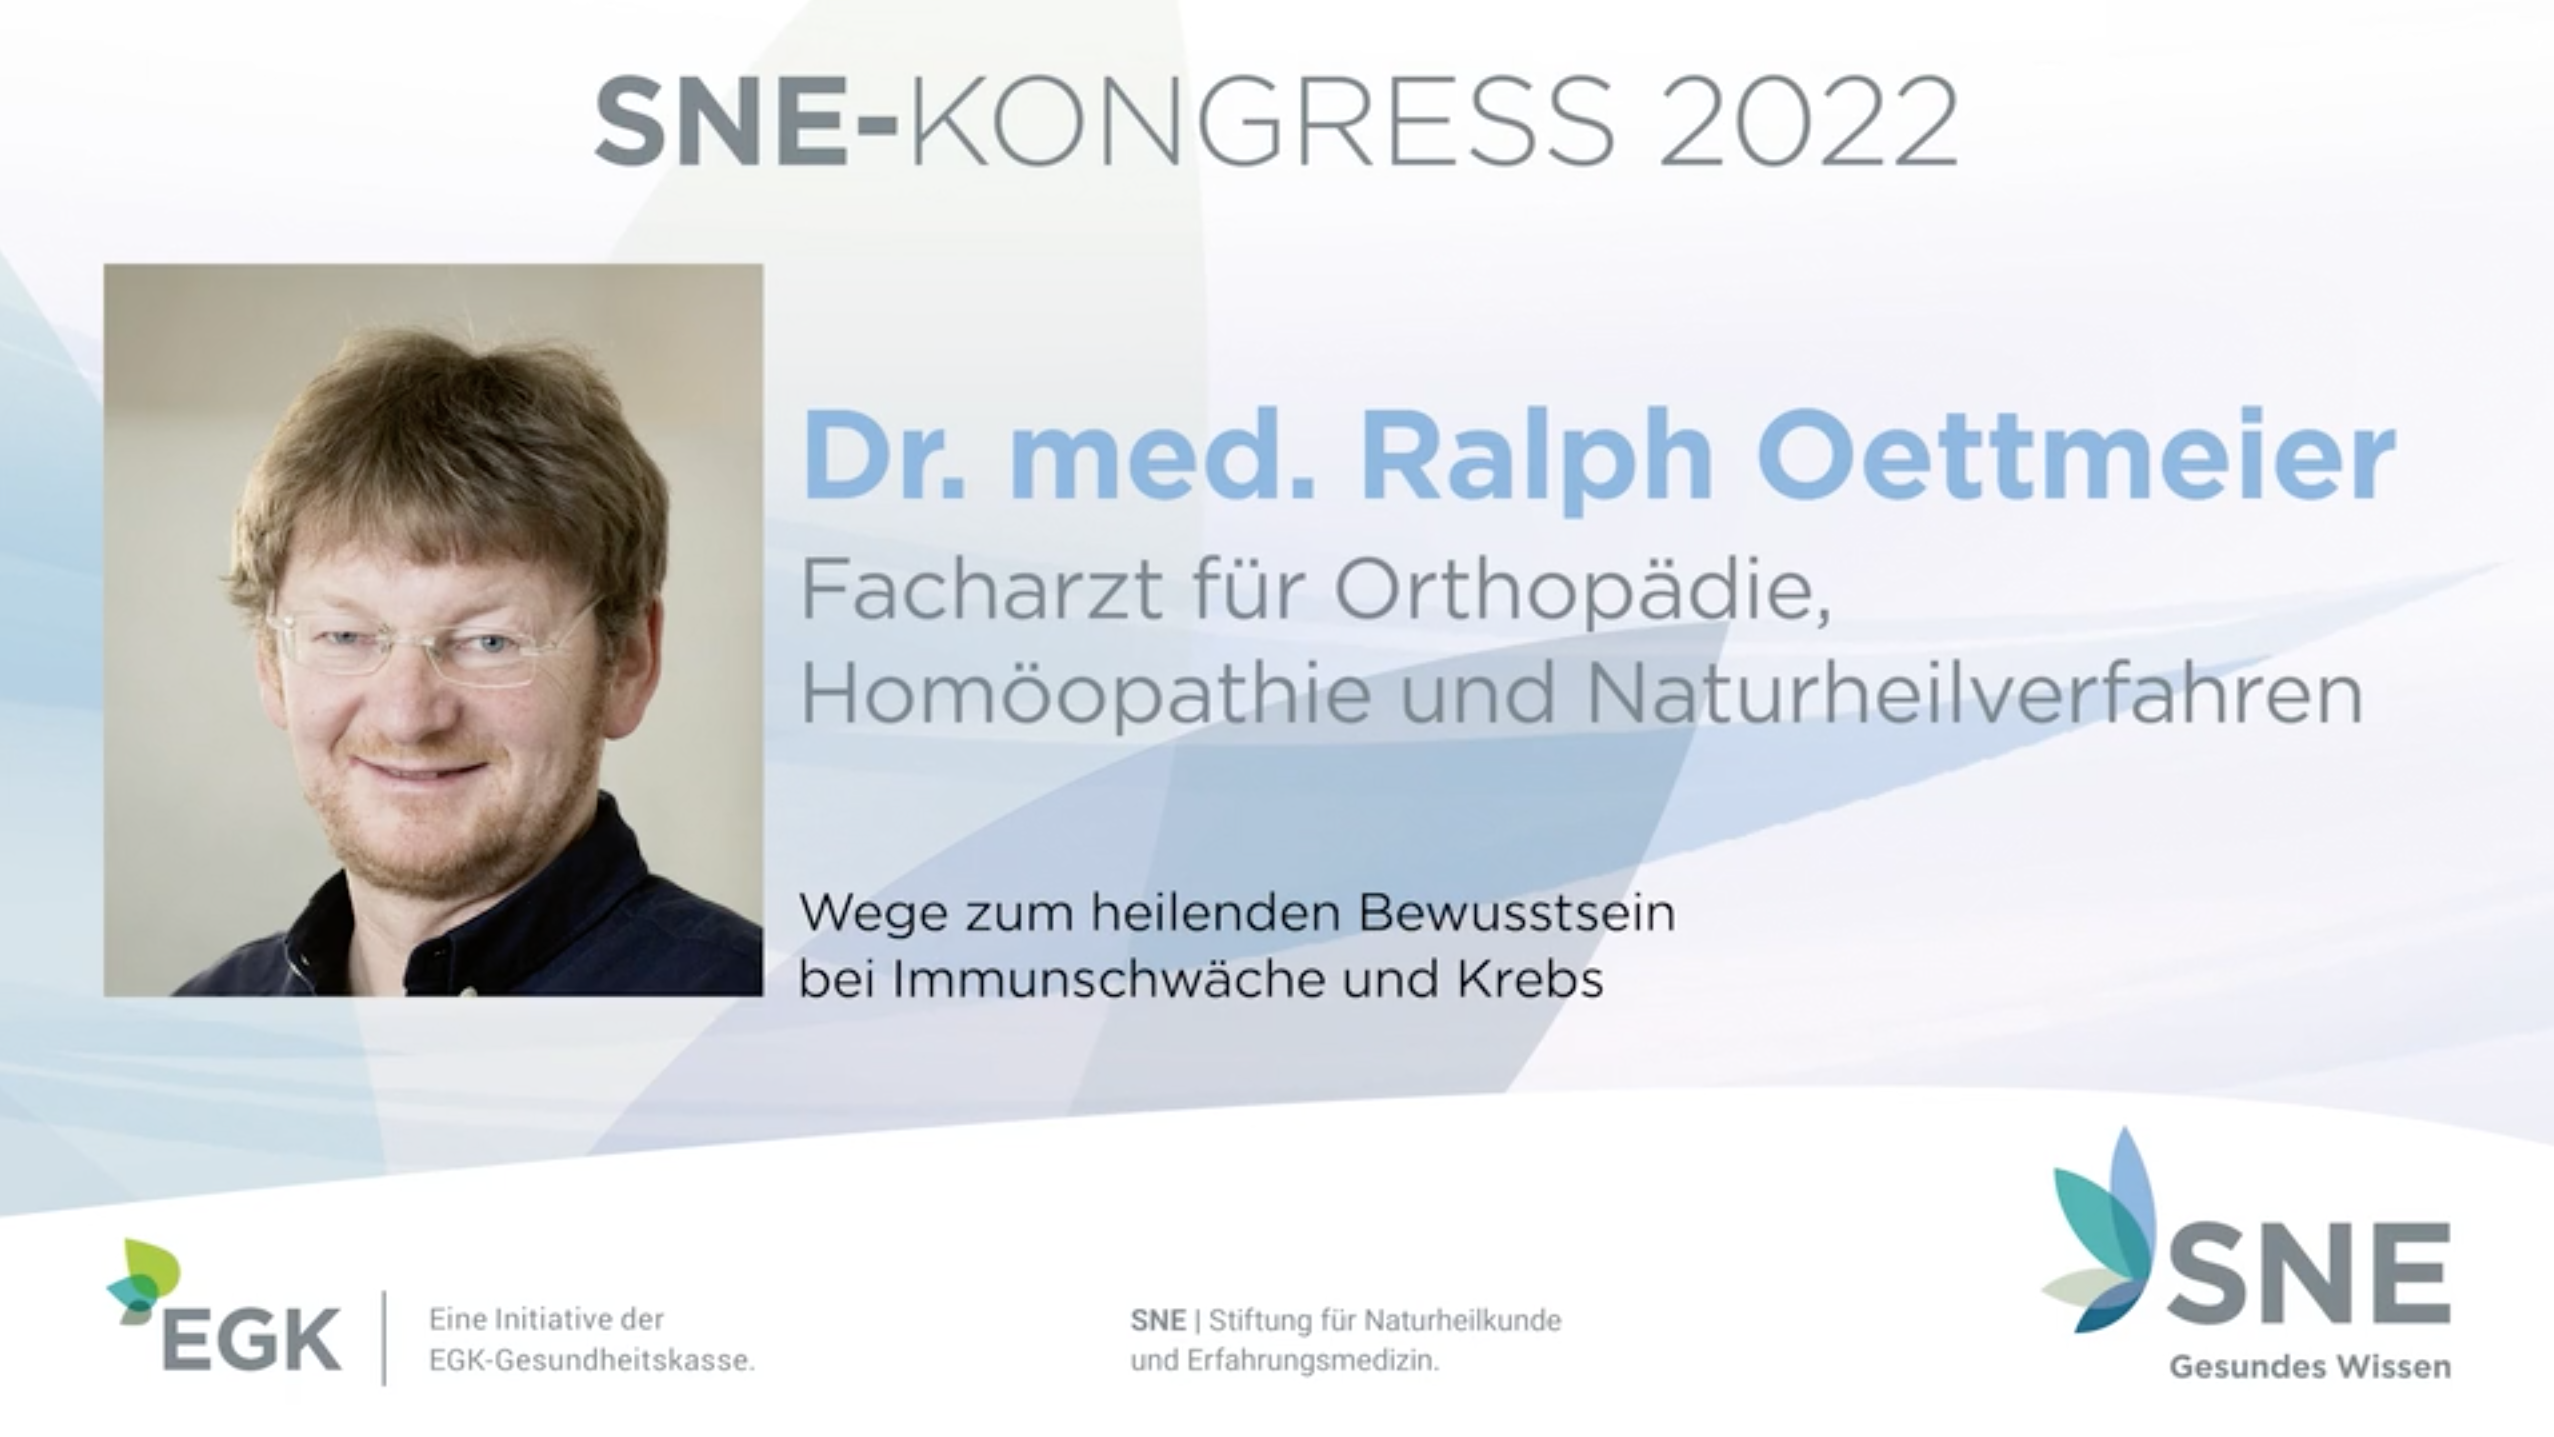 Beitragsbild zum SNE-Kongress 2022, Profilbild von Dr. med. Ralph Oettmeier mit Vortragstitel "Wege zum heilenden Bewusstsein bei Immunschwäche und Krebs"